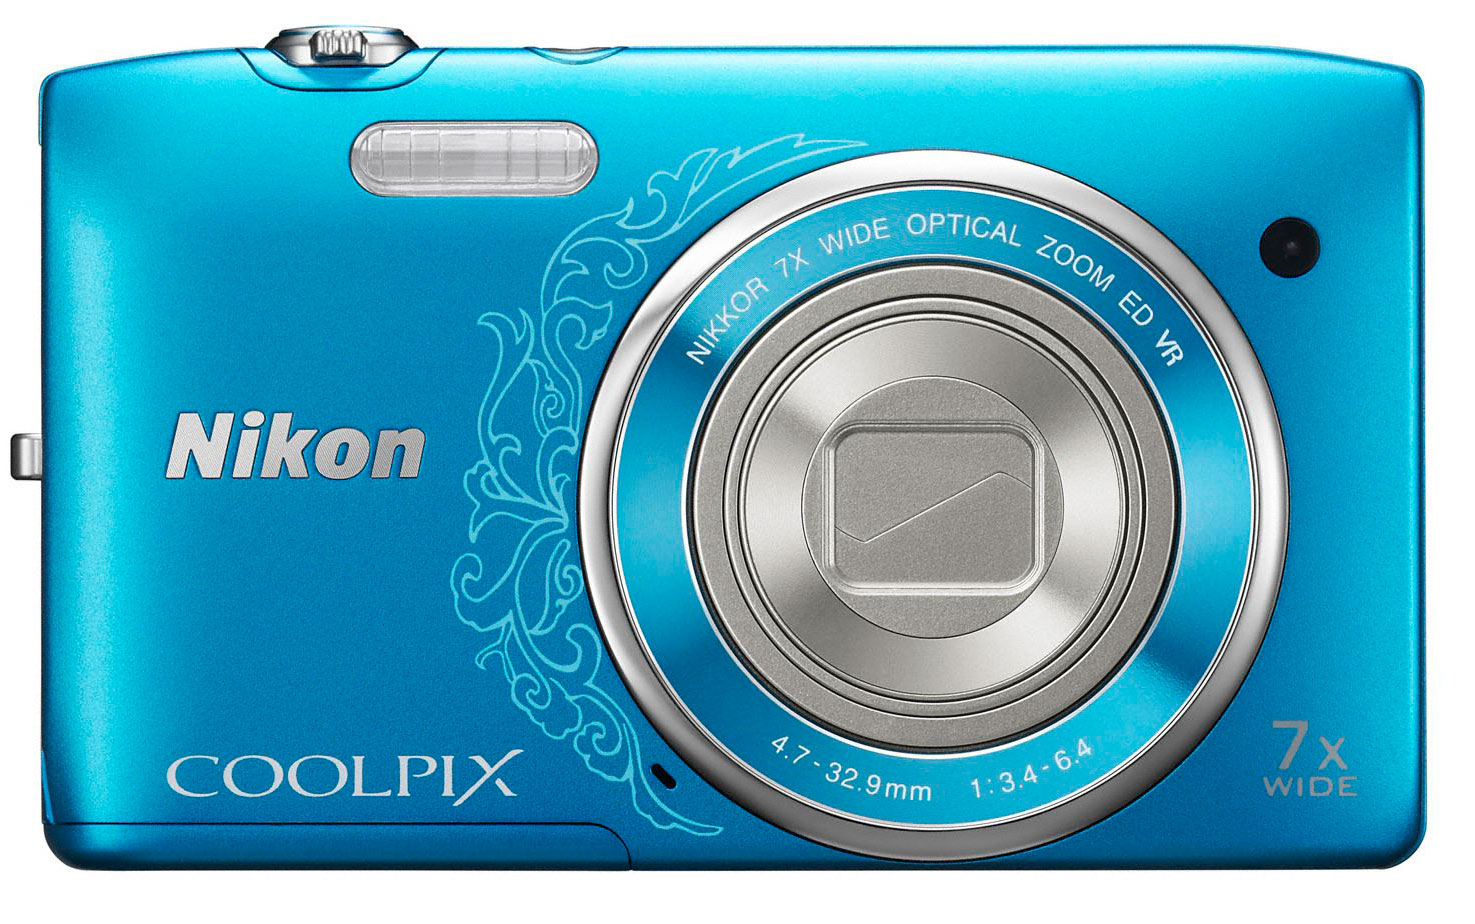 Nikon Coolpix S3500 Digital Camera